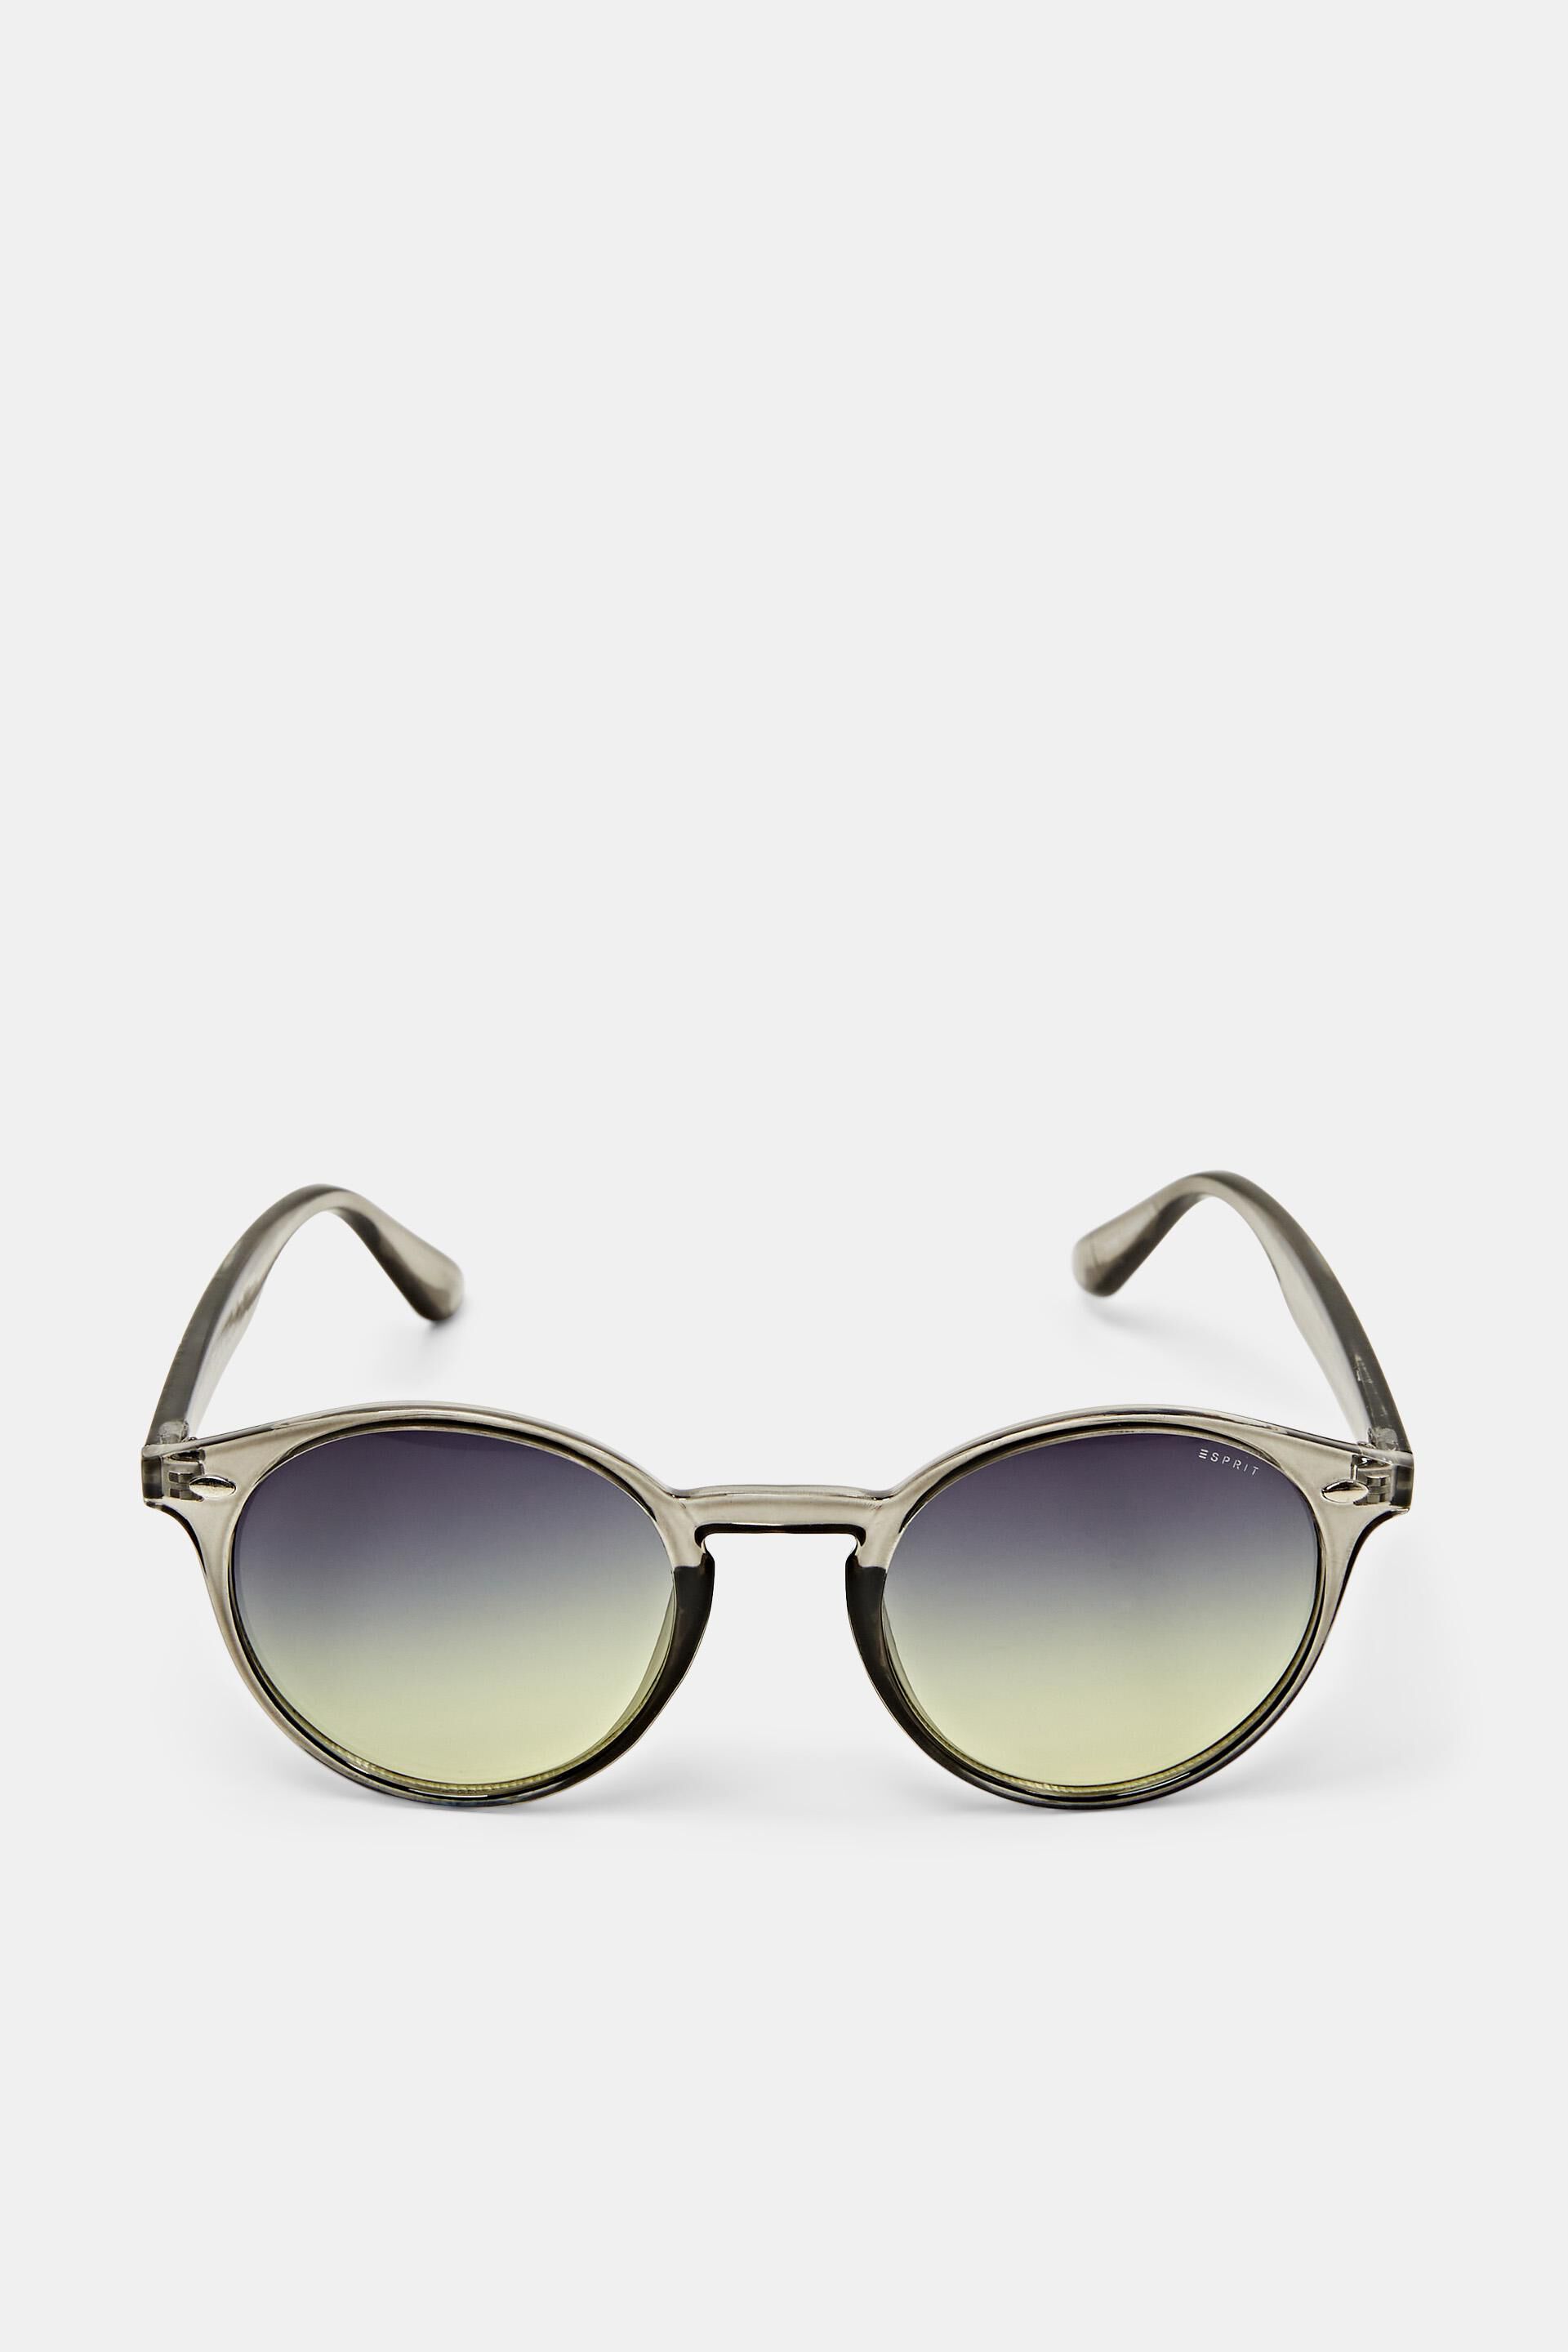 Esprit lenses with round Sunglasses